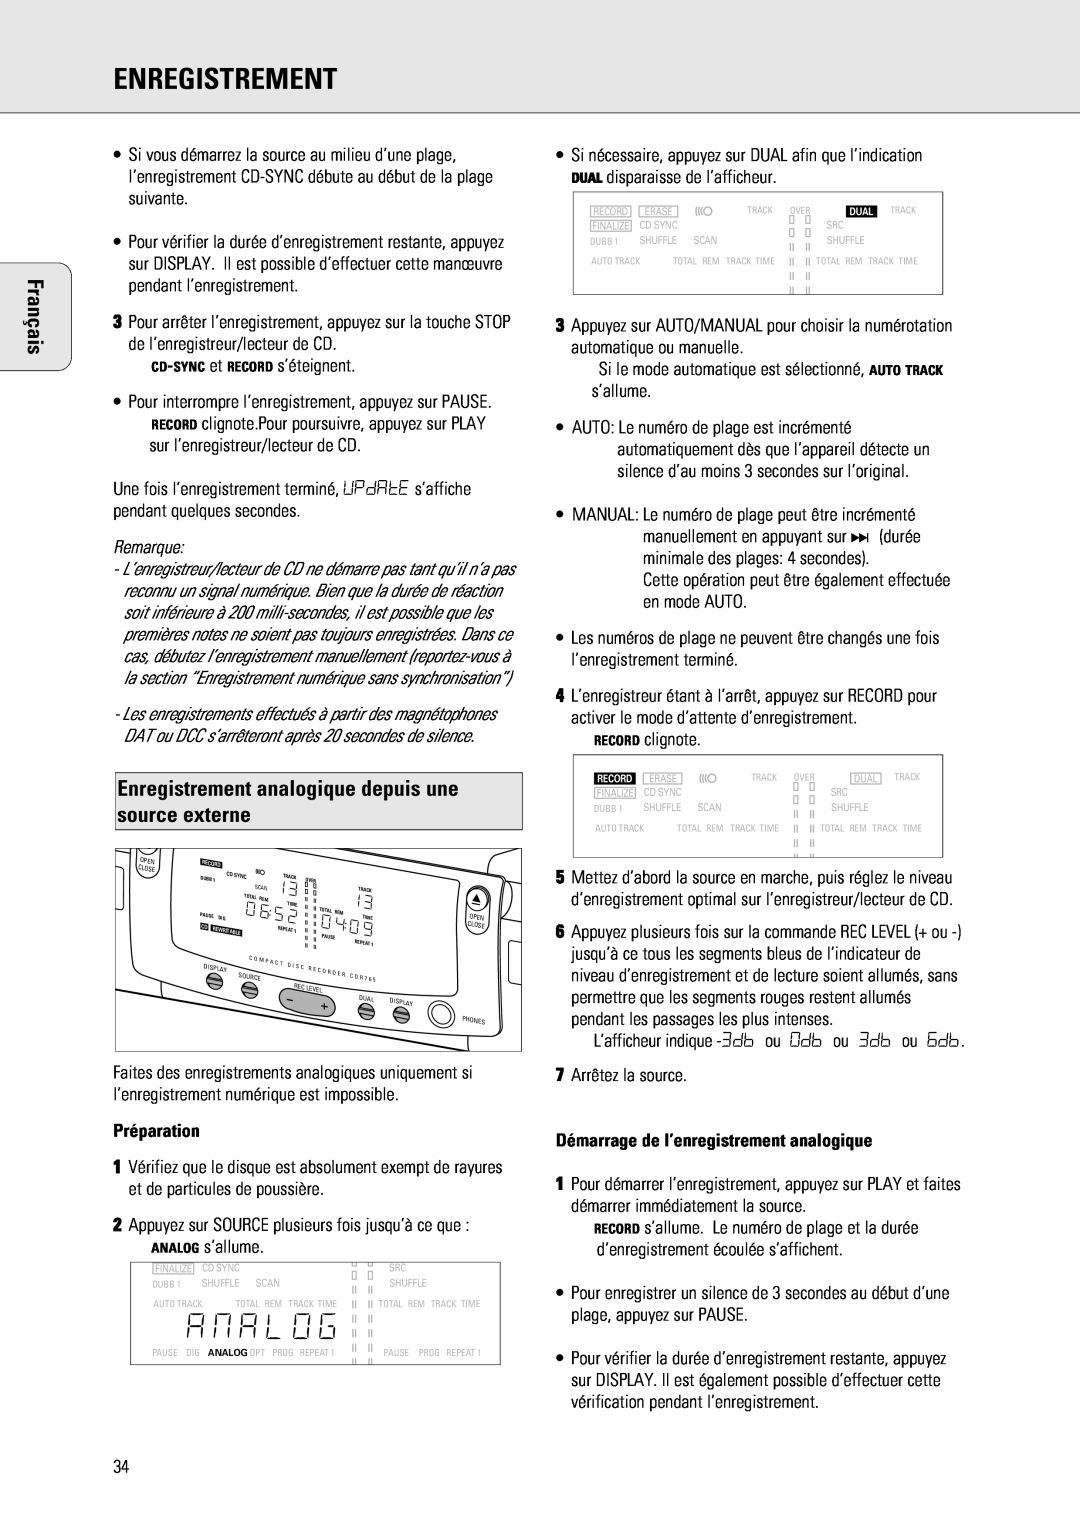 Philips 765 manual Démarrage de l’enregistrement analogique, Enregistrement, Français, Préparation 